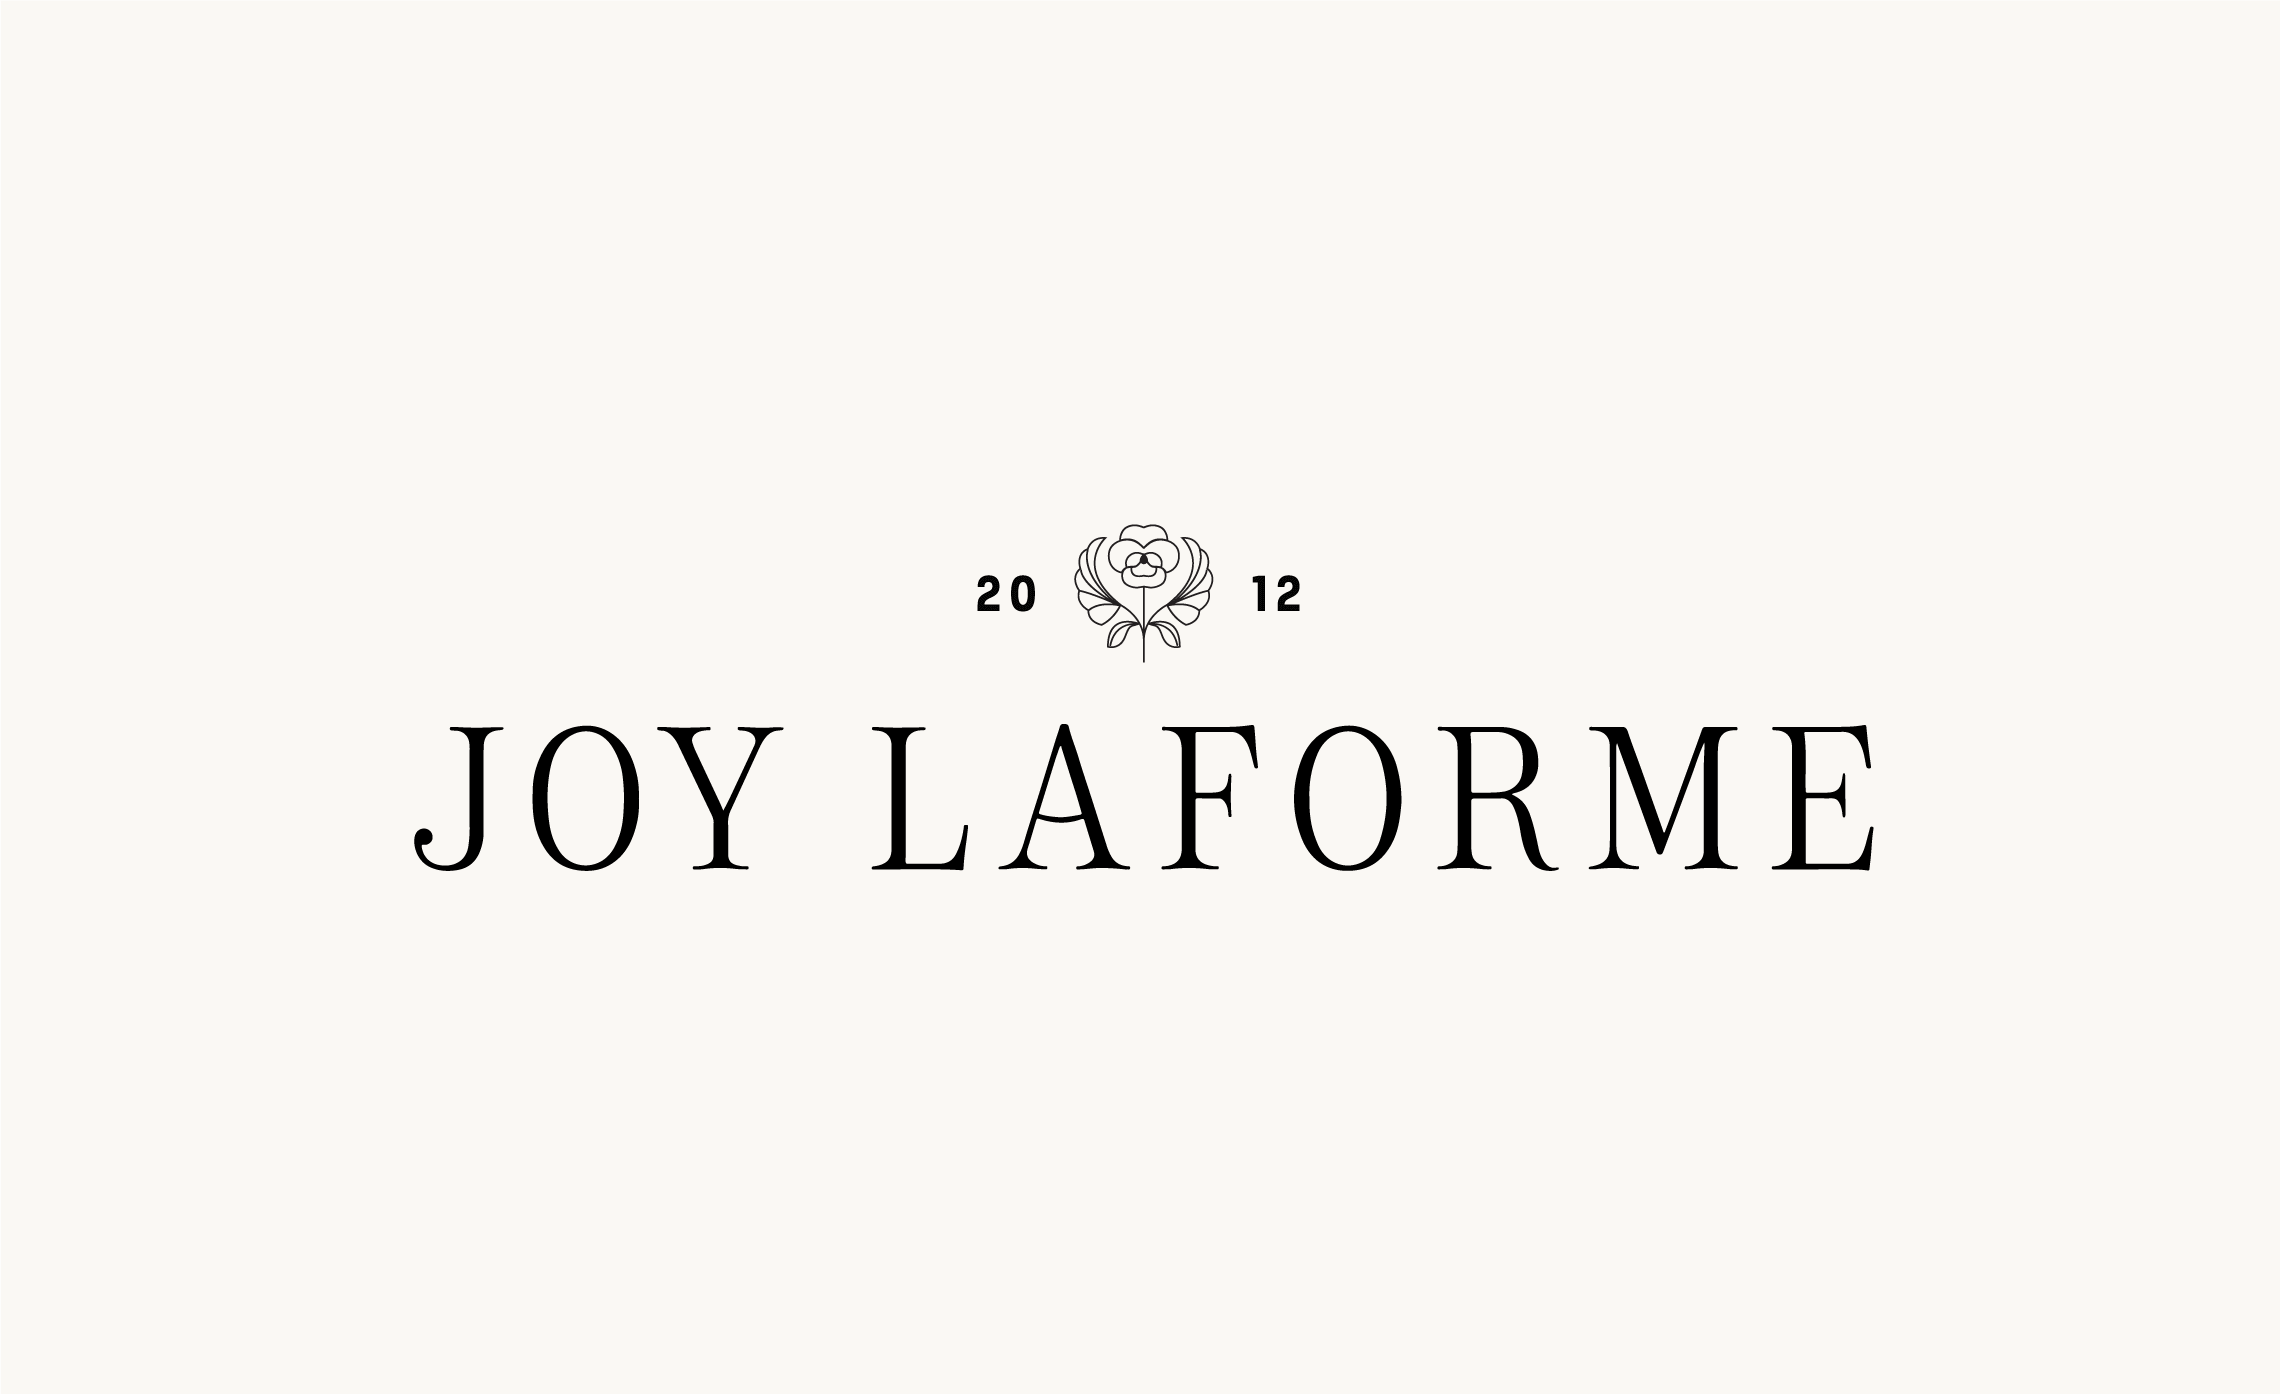 Logo for Joy Laforme designed by Aeolidia.